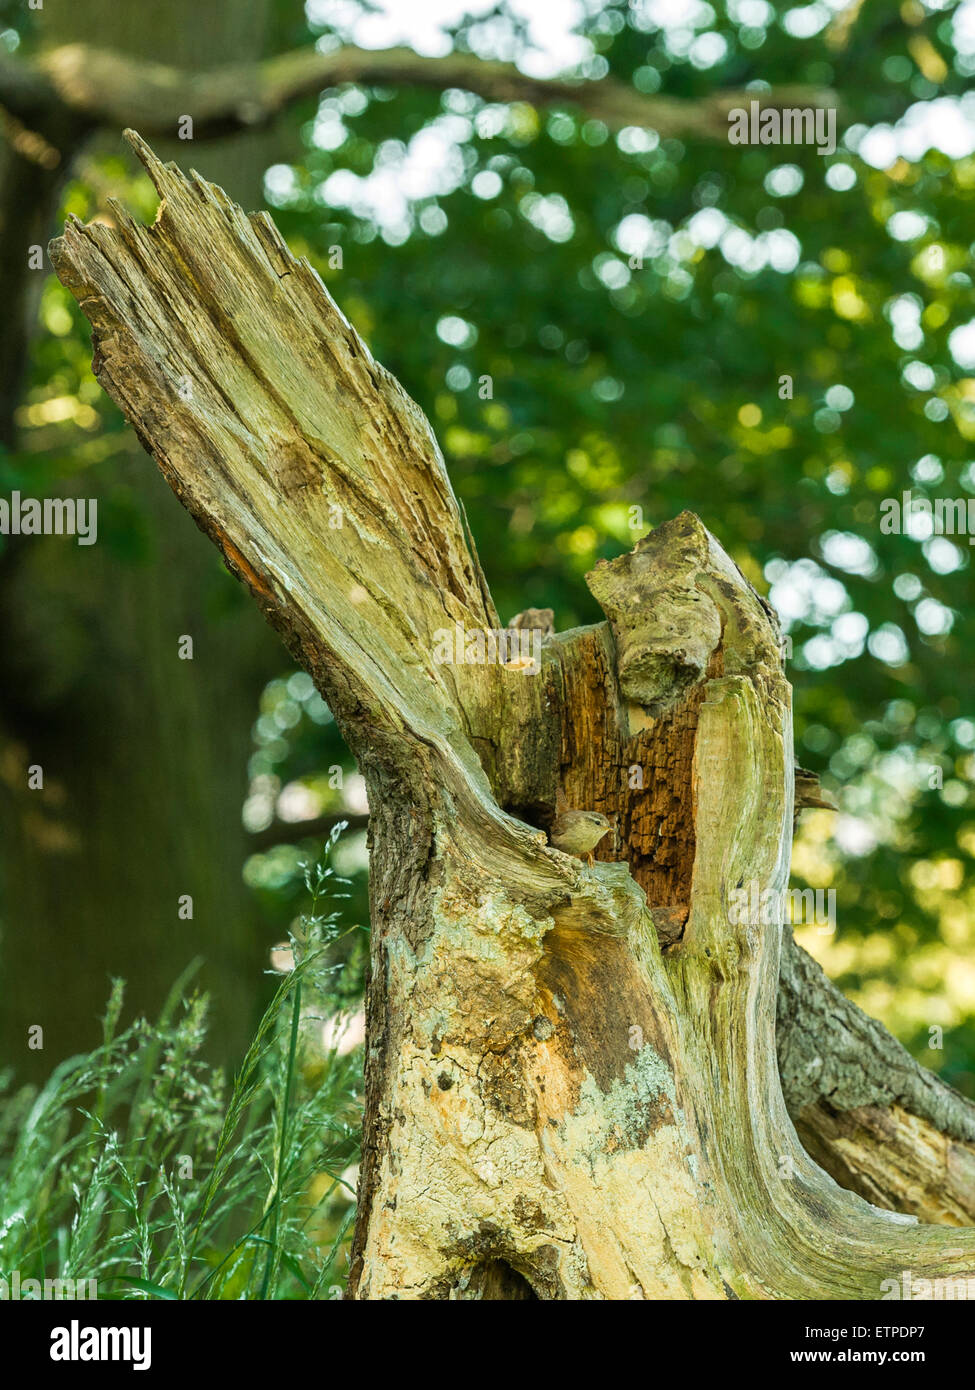 British Wildlife, Wren (Troglodytidae) auf Nahrungssuche in Wald Natur. Stockfoto